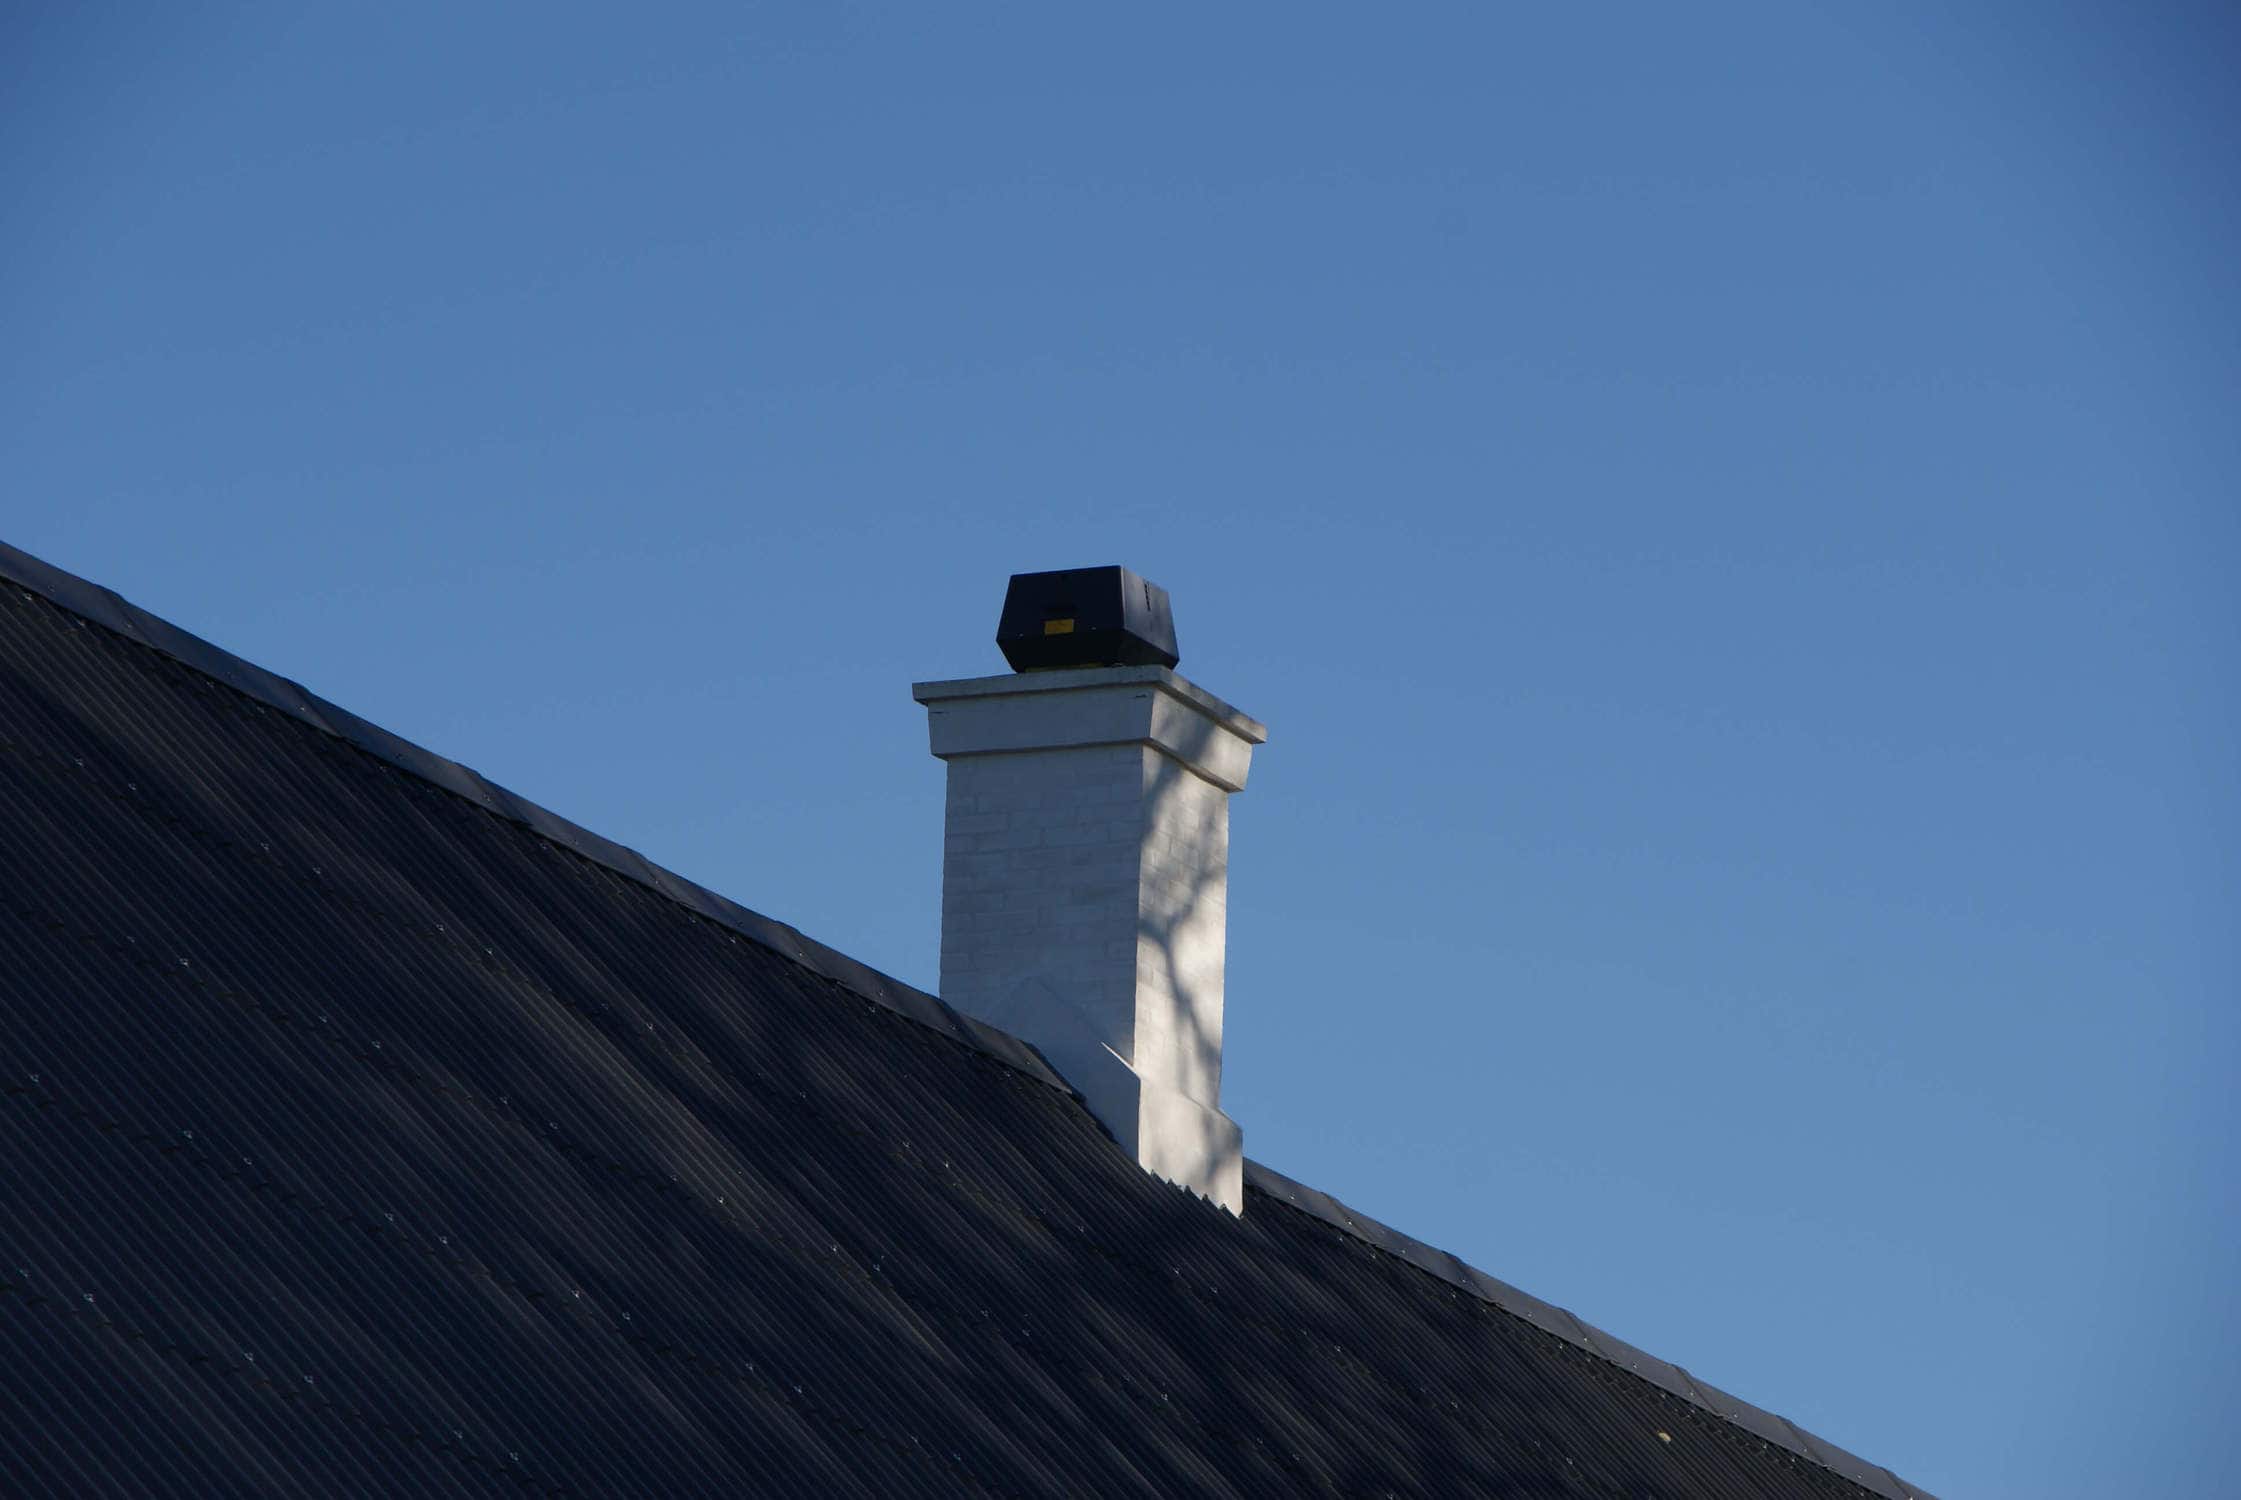 RSV chimney fan on white chimney